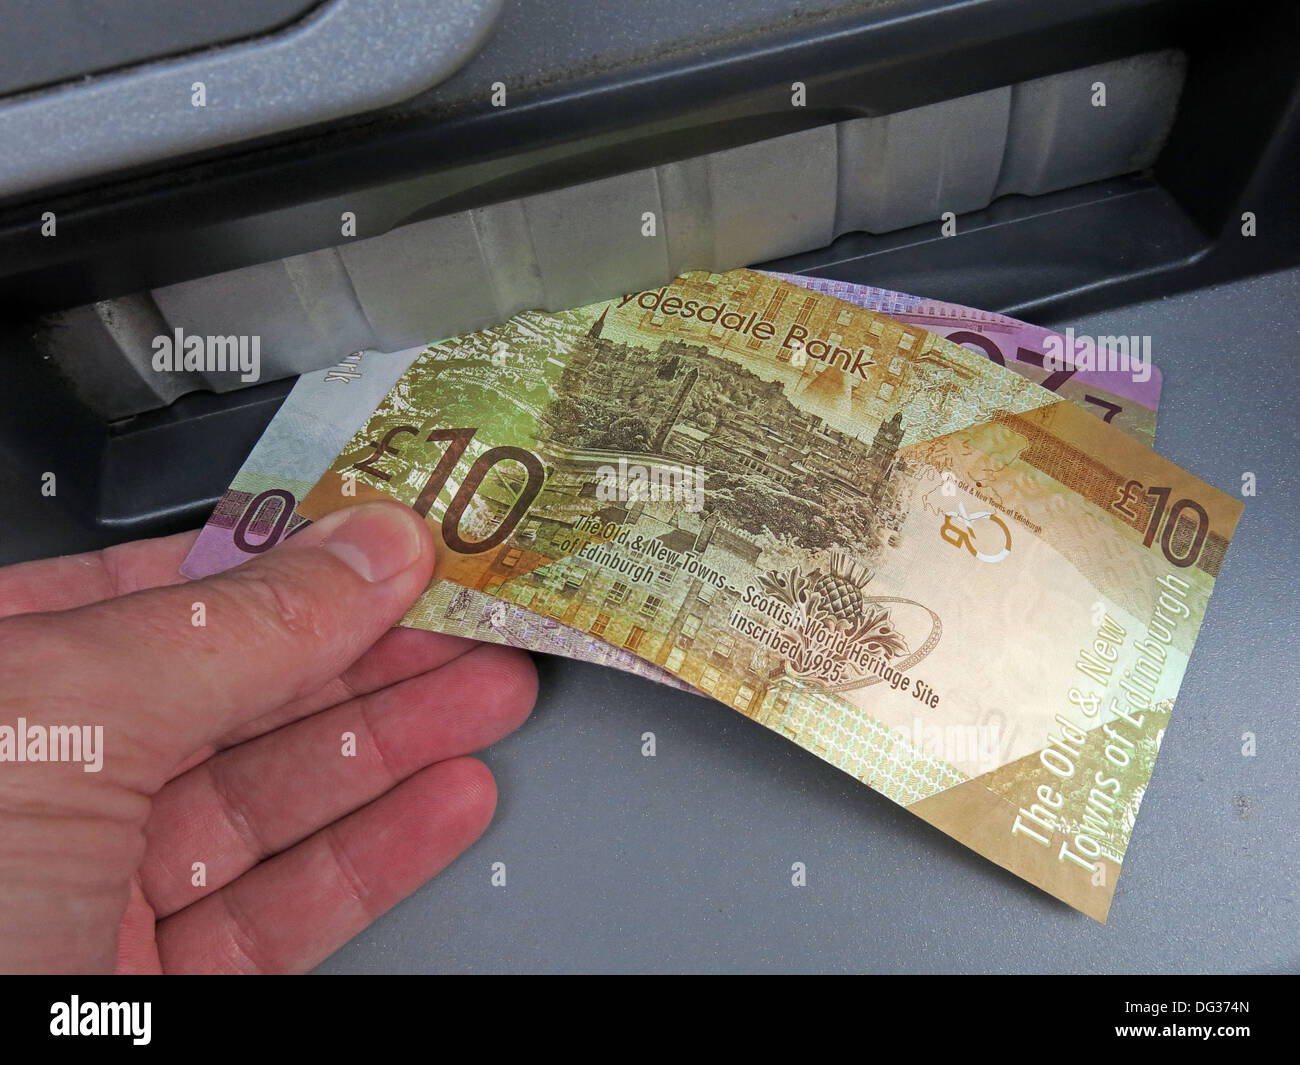 Schottische Pfund Noten gezogen von einer Clydesdale Bank ATM Bargeld Abgabe Maschine, Schottland, Vereinigtes Königreich Stockfoto